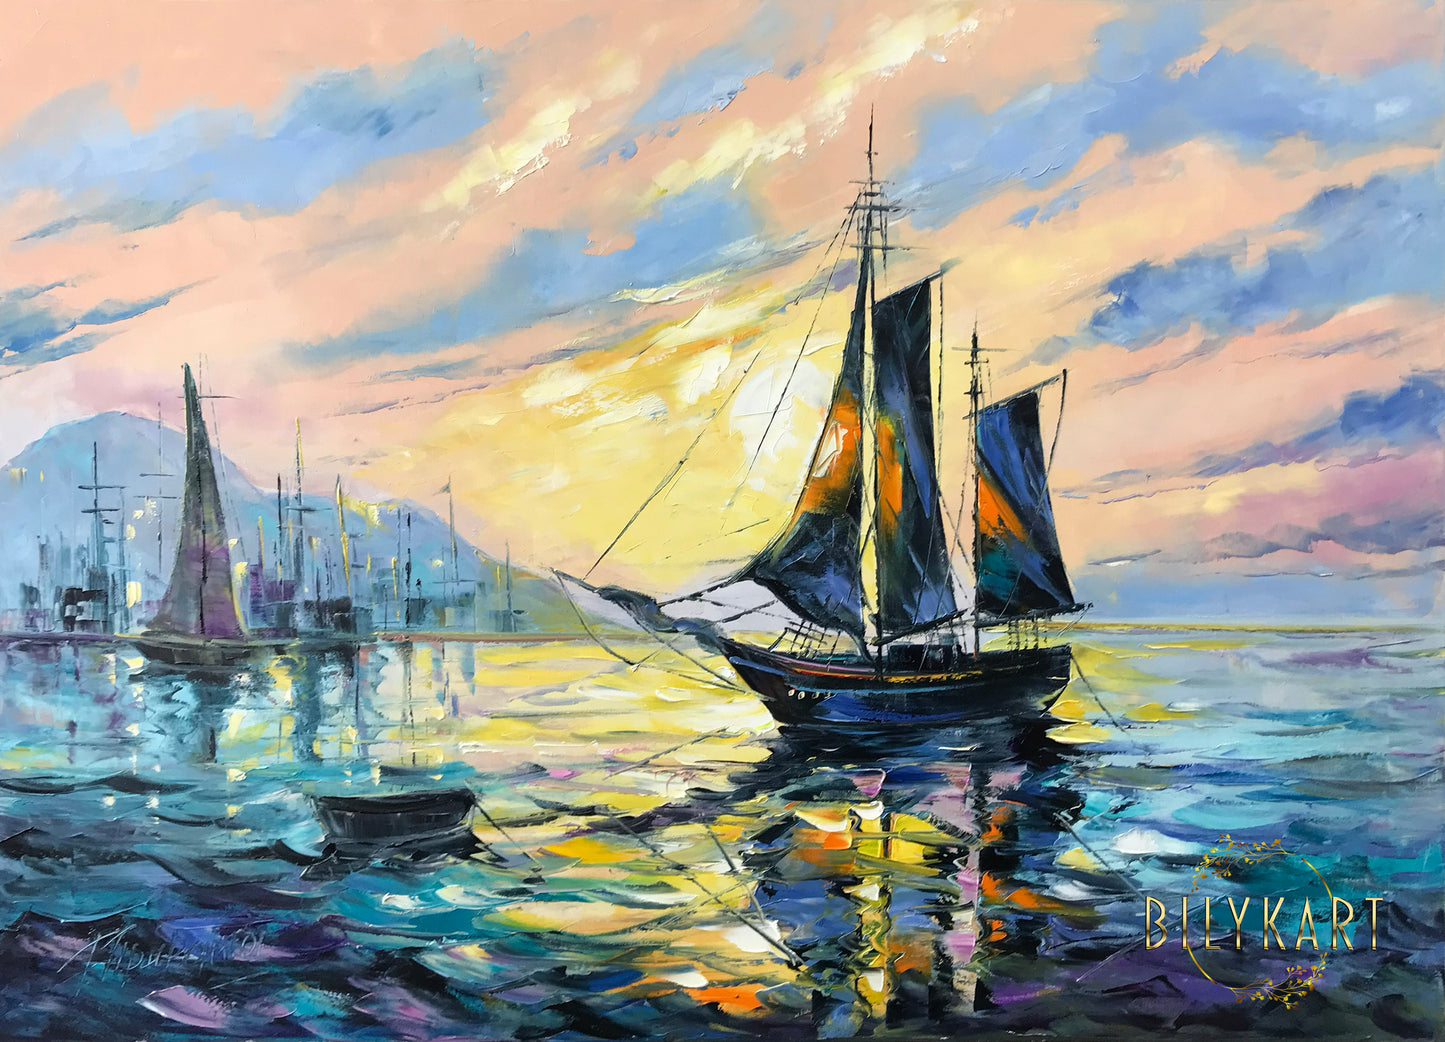 Sailing Boat at Sunset Oil Painting Original Tall Sailing Ship Wall Art Decor Ship at Sea Painting on Canvas